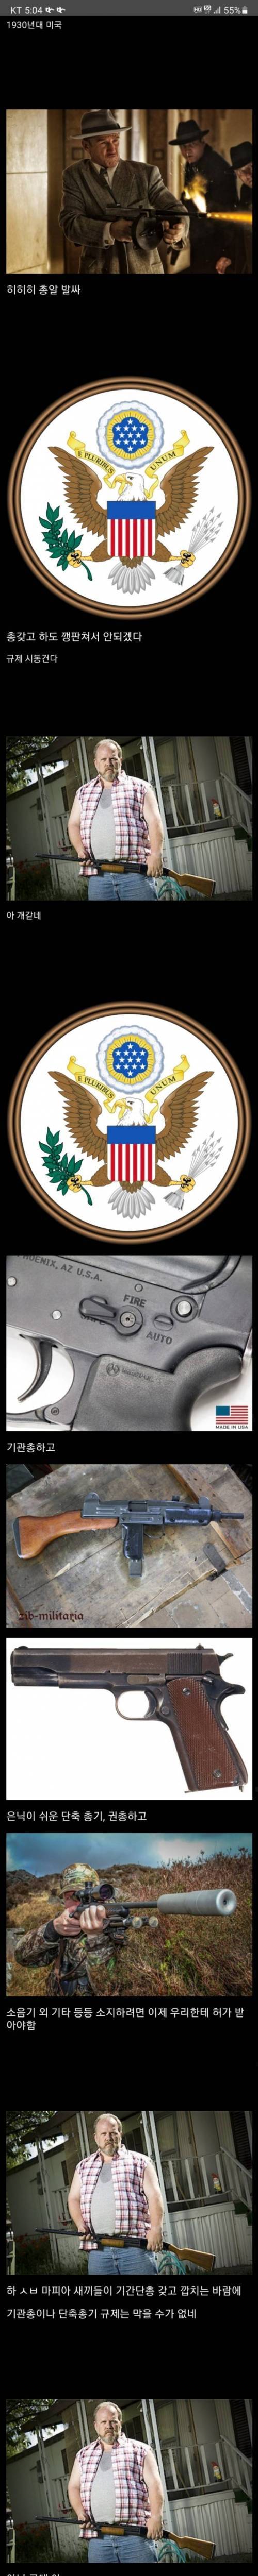 17 미국의 총기 규제.jpg